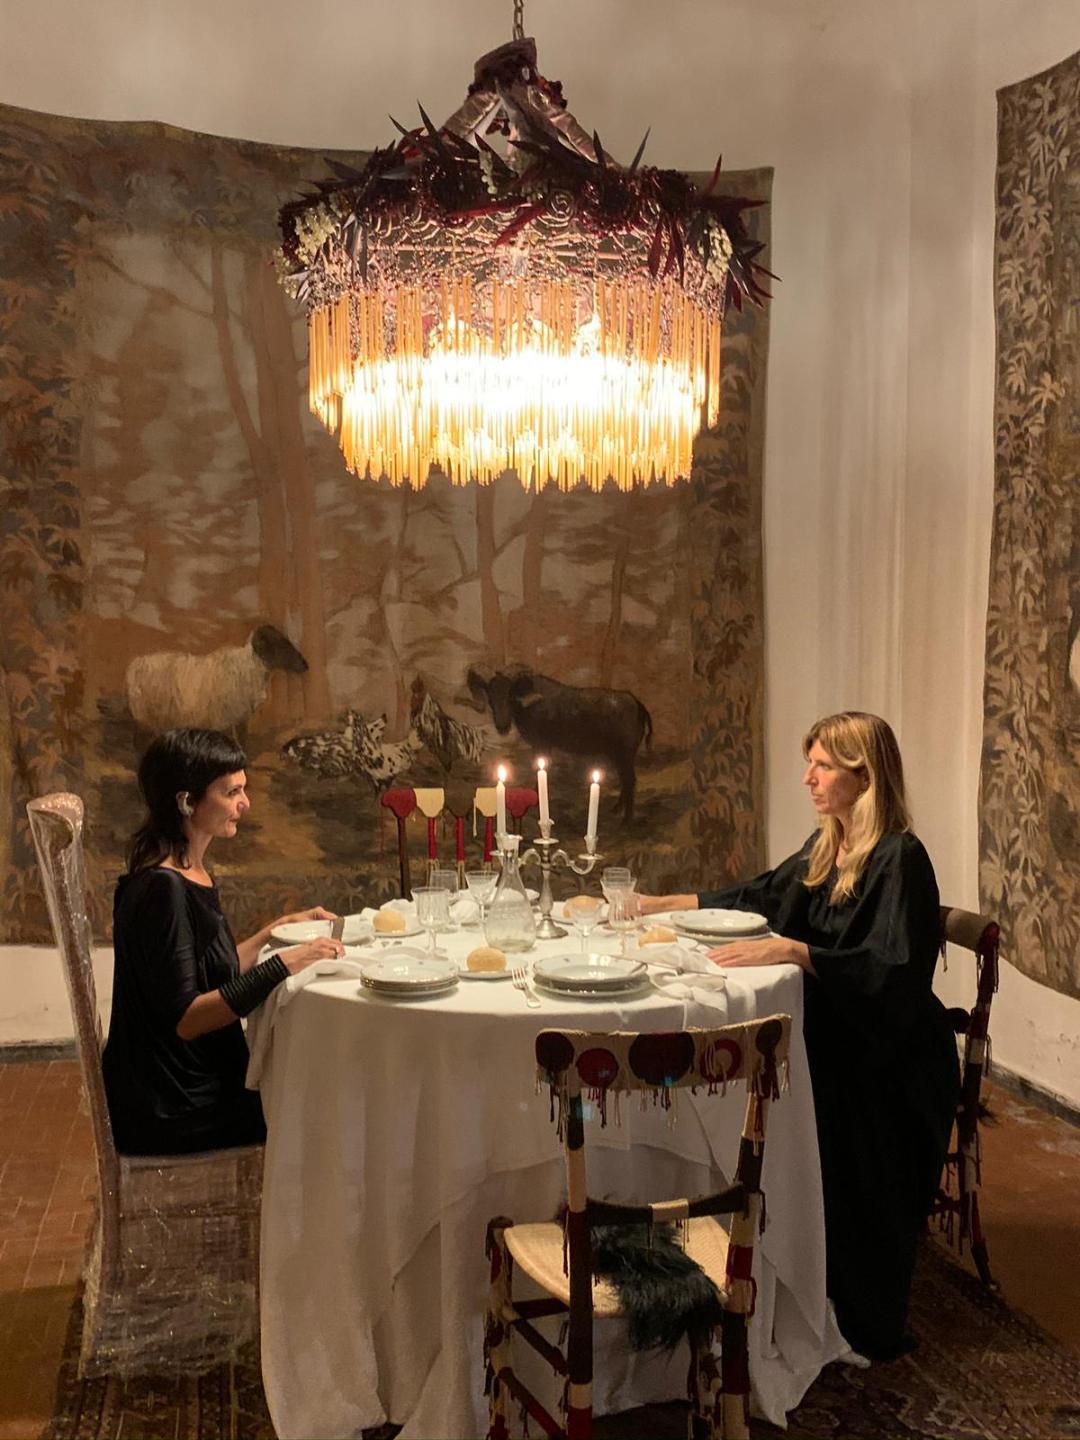 Il salotto buono, Valentina Giovando ed Elena Carozzi - courtesy Valentina Giovando